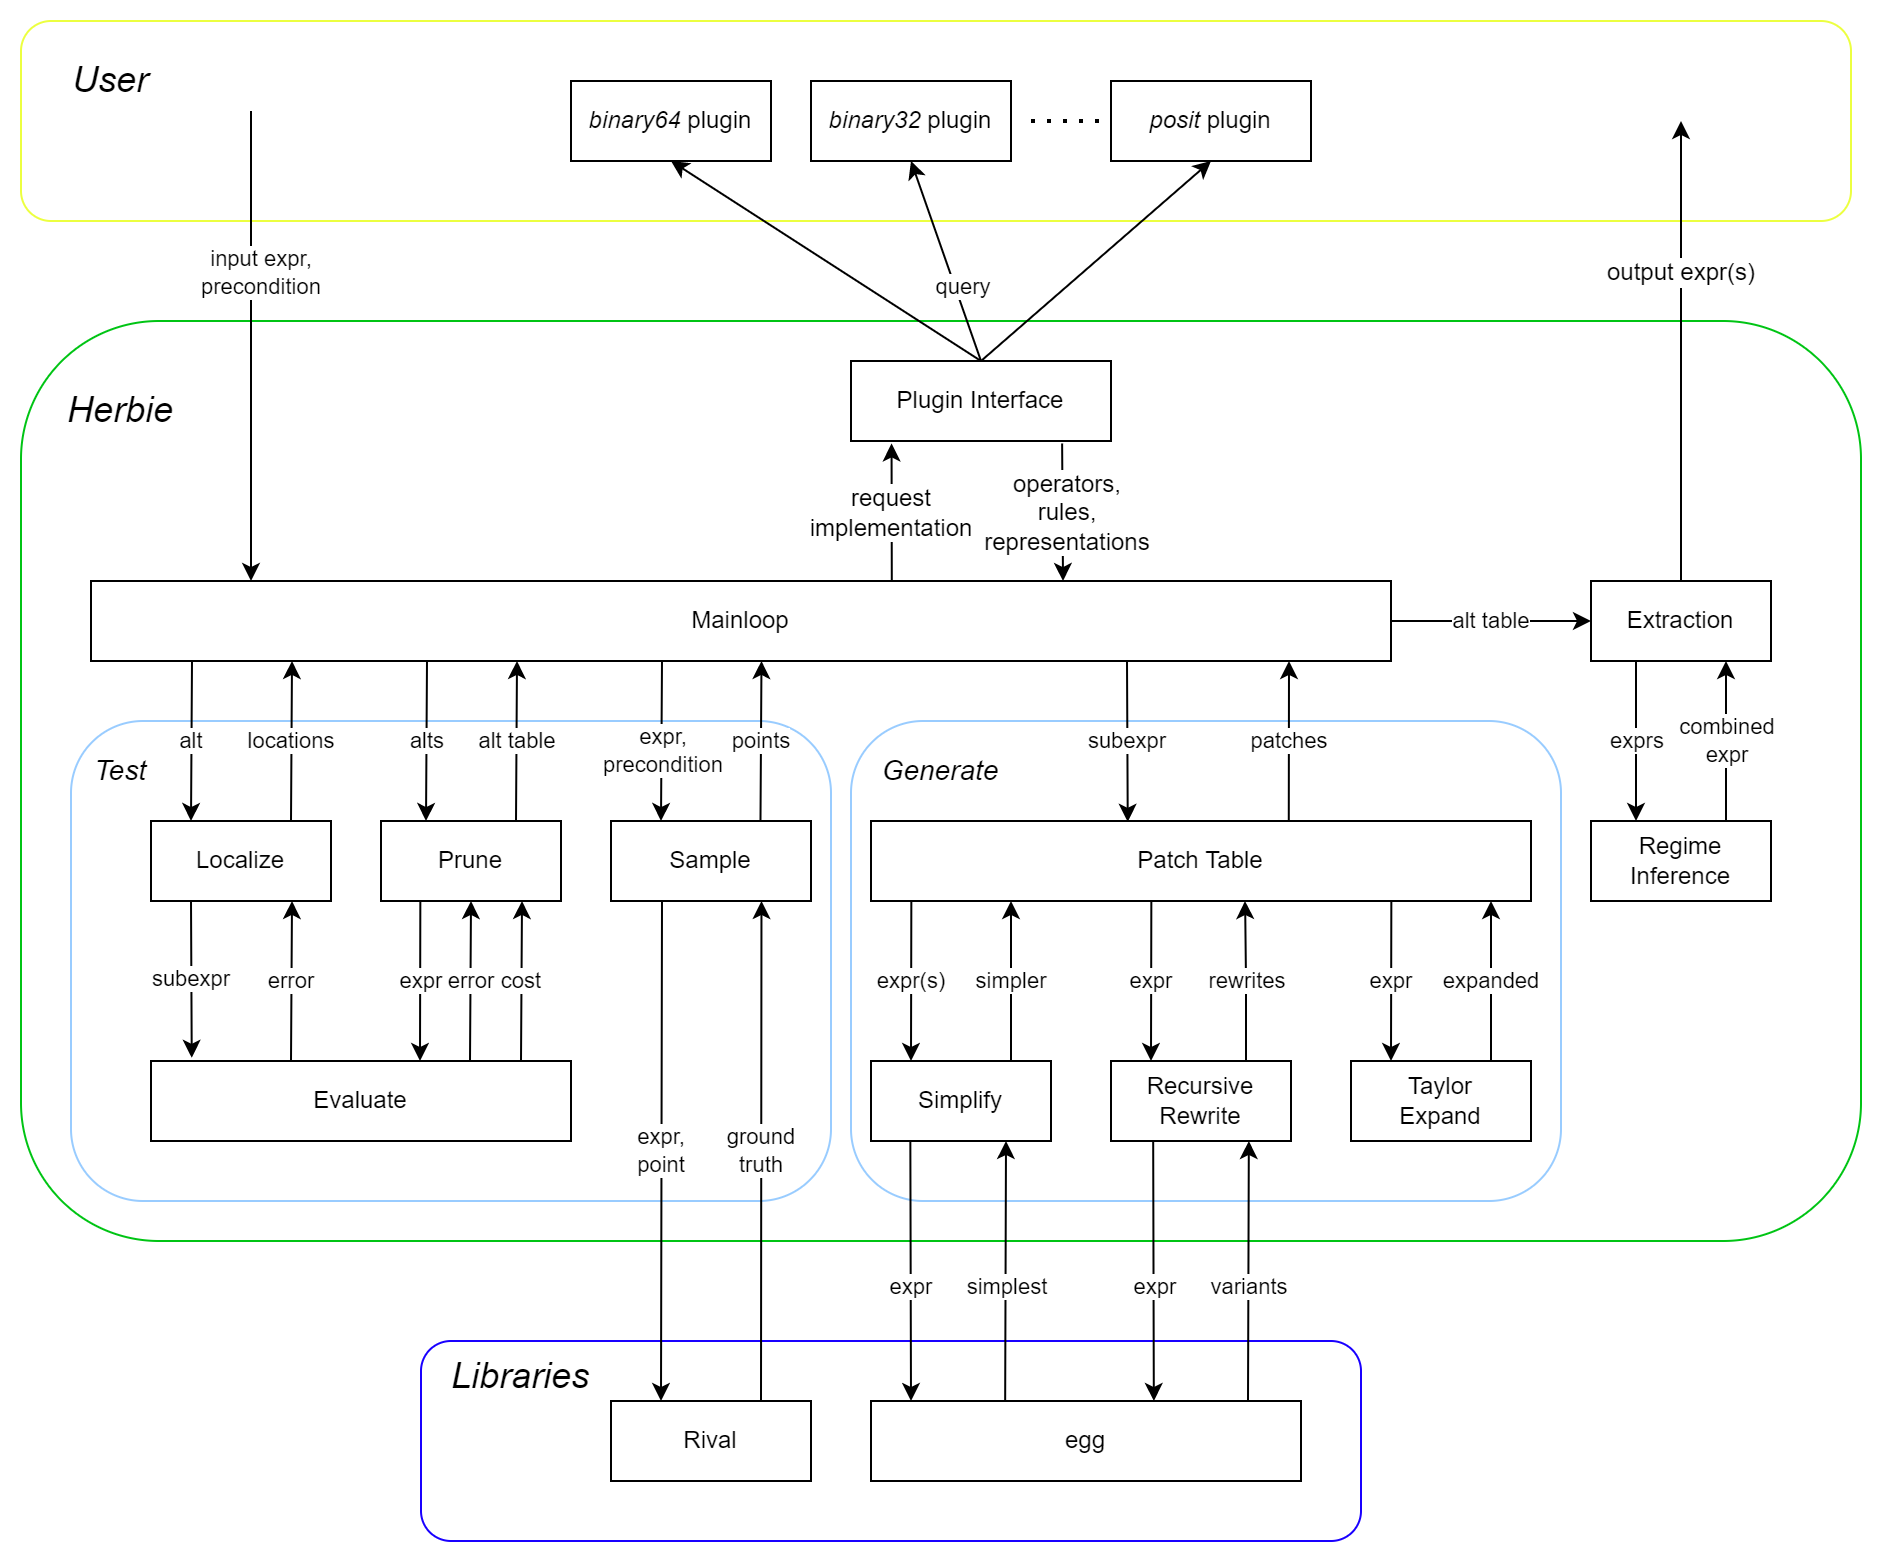 System diagram of Herbie